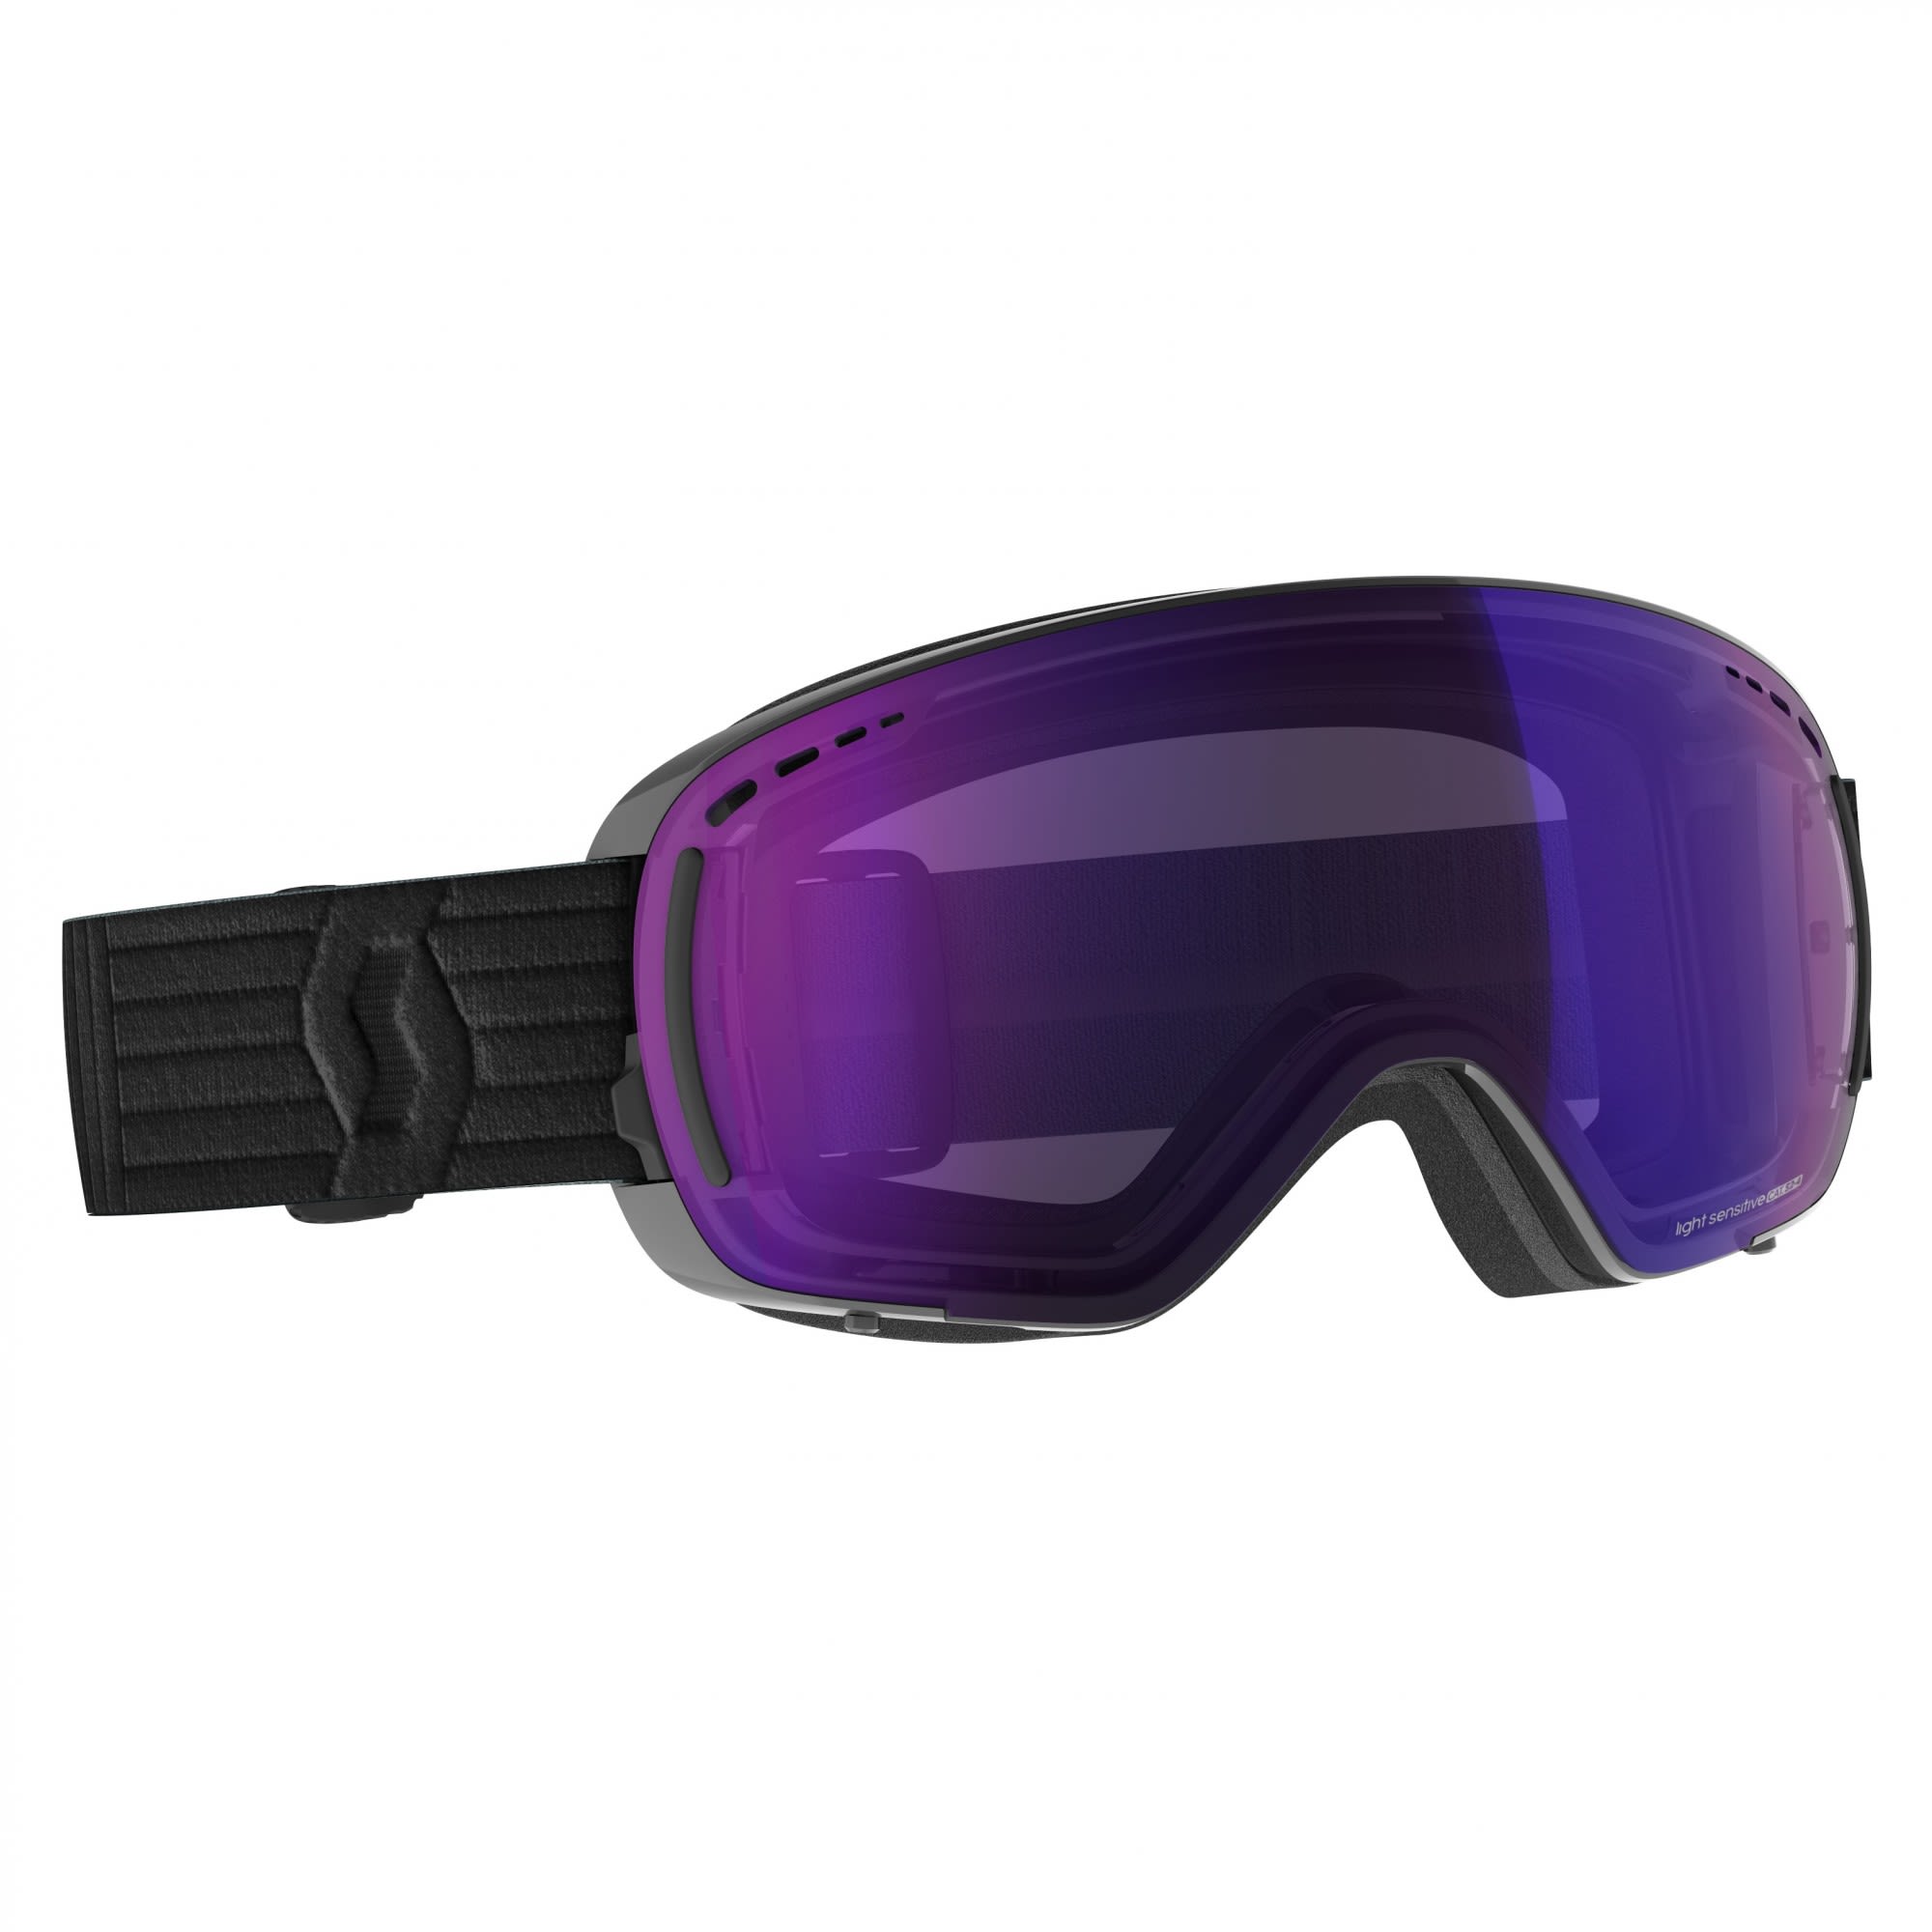 Scott Kompakte selbsttönende Ski und Snowboardbrille Black - Light Sensitive Blue Chrome